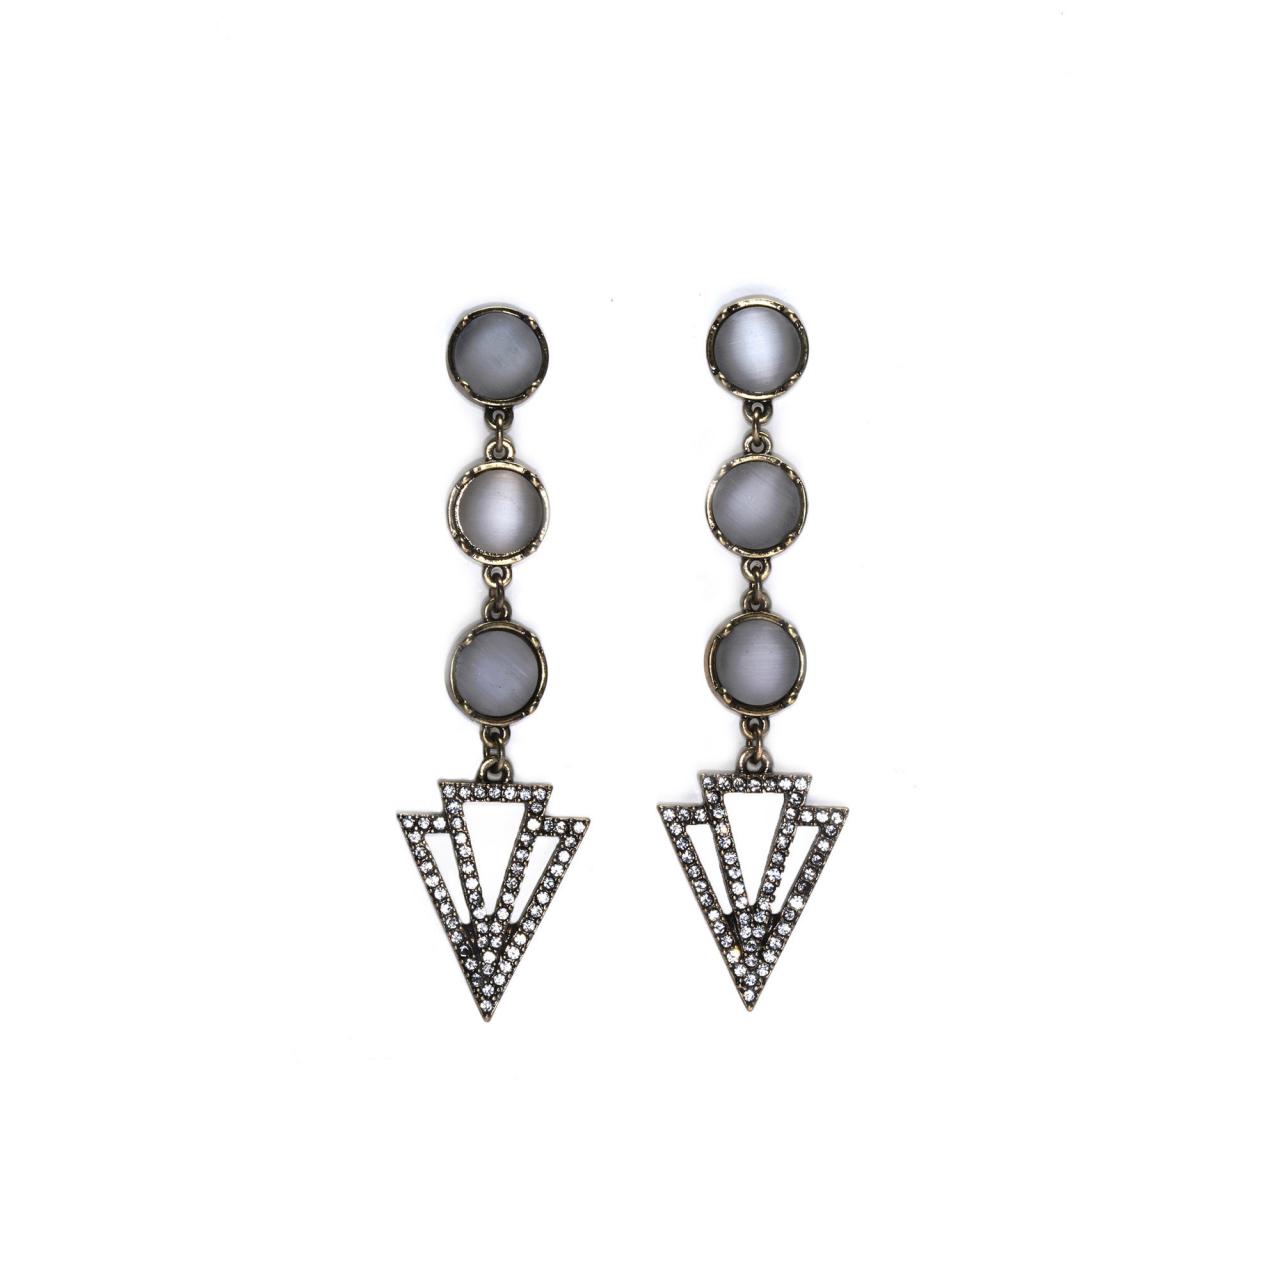 Art Deco Earrings / Vintage Earrings / Earrings Femme / Opal Earrings / Gatsby Jewelry / Flapper Jewelry / 1920s Jewelry / Drop Earrings